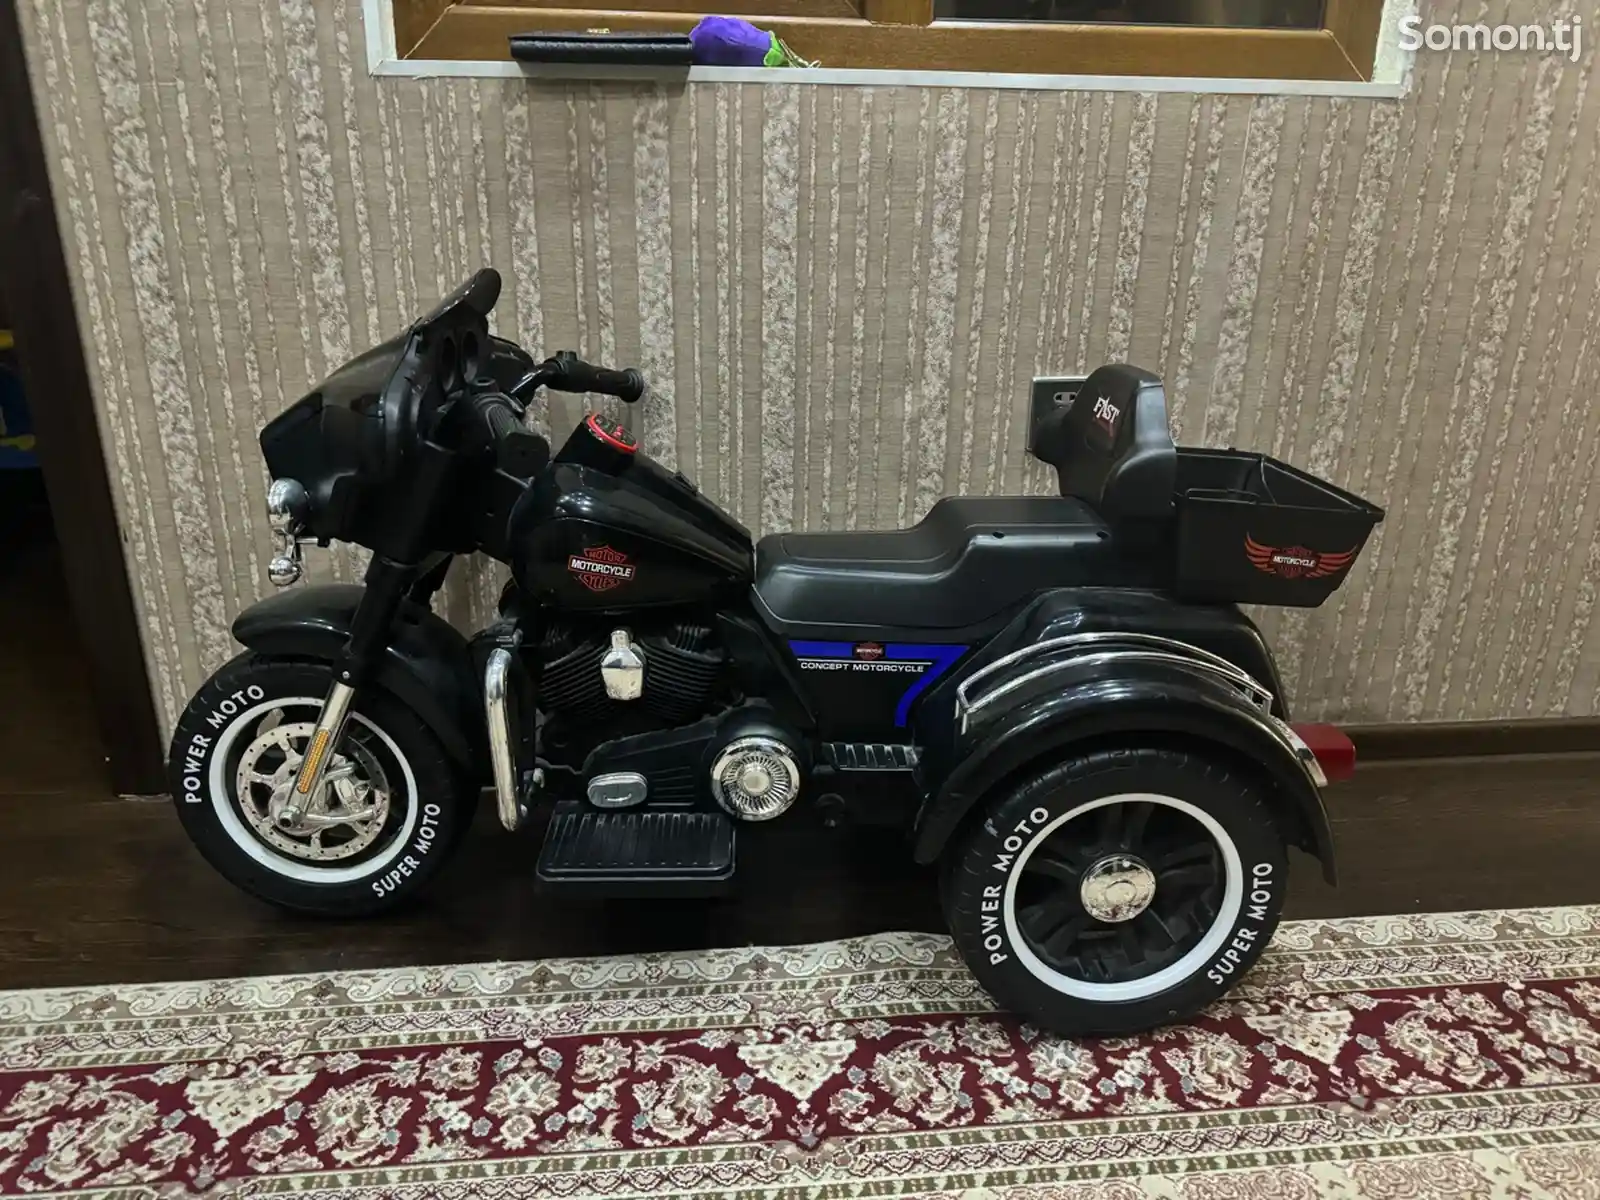 Детский мотоцикл-2